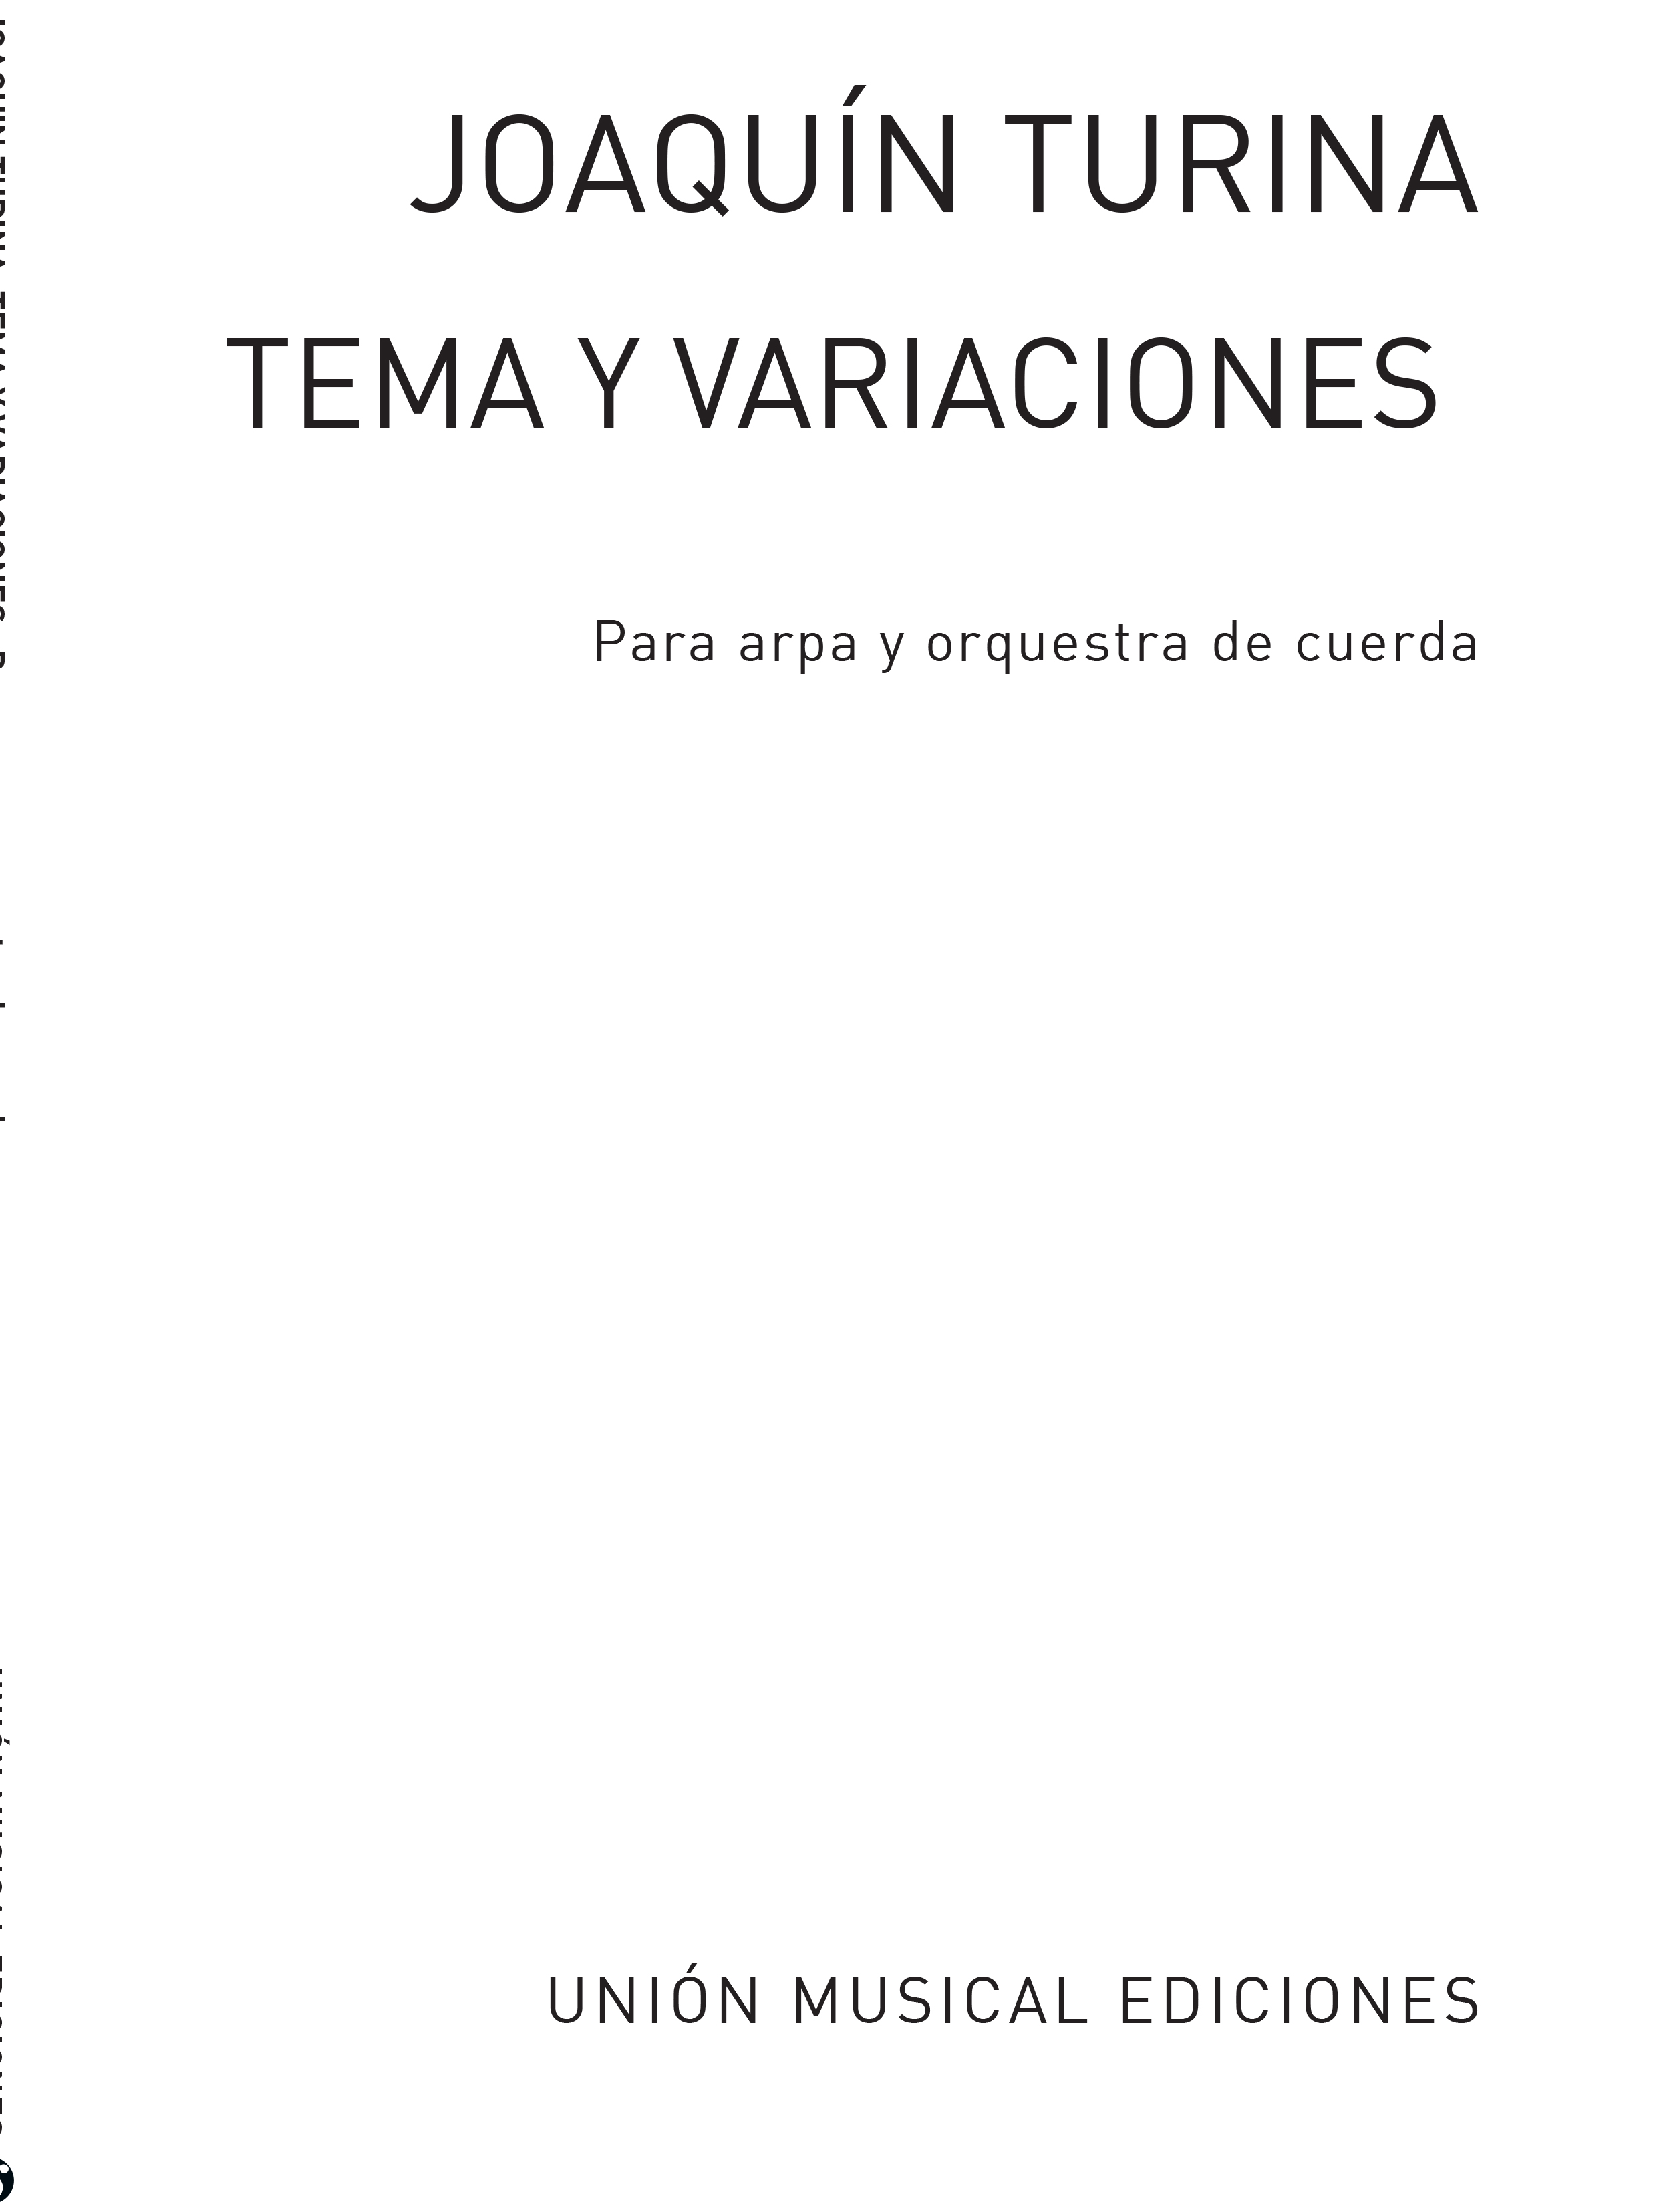 Joaqun Turina Rafael Fruhbeck De Burgos: Tema Y Variaciones Opus 100 Numero 1: